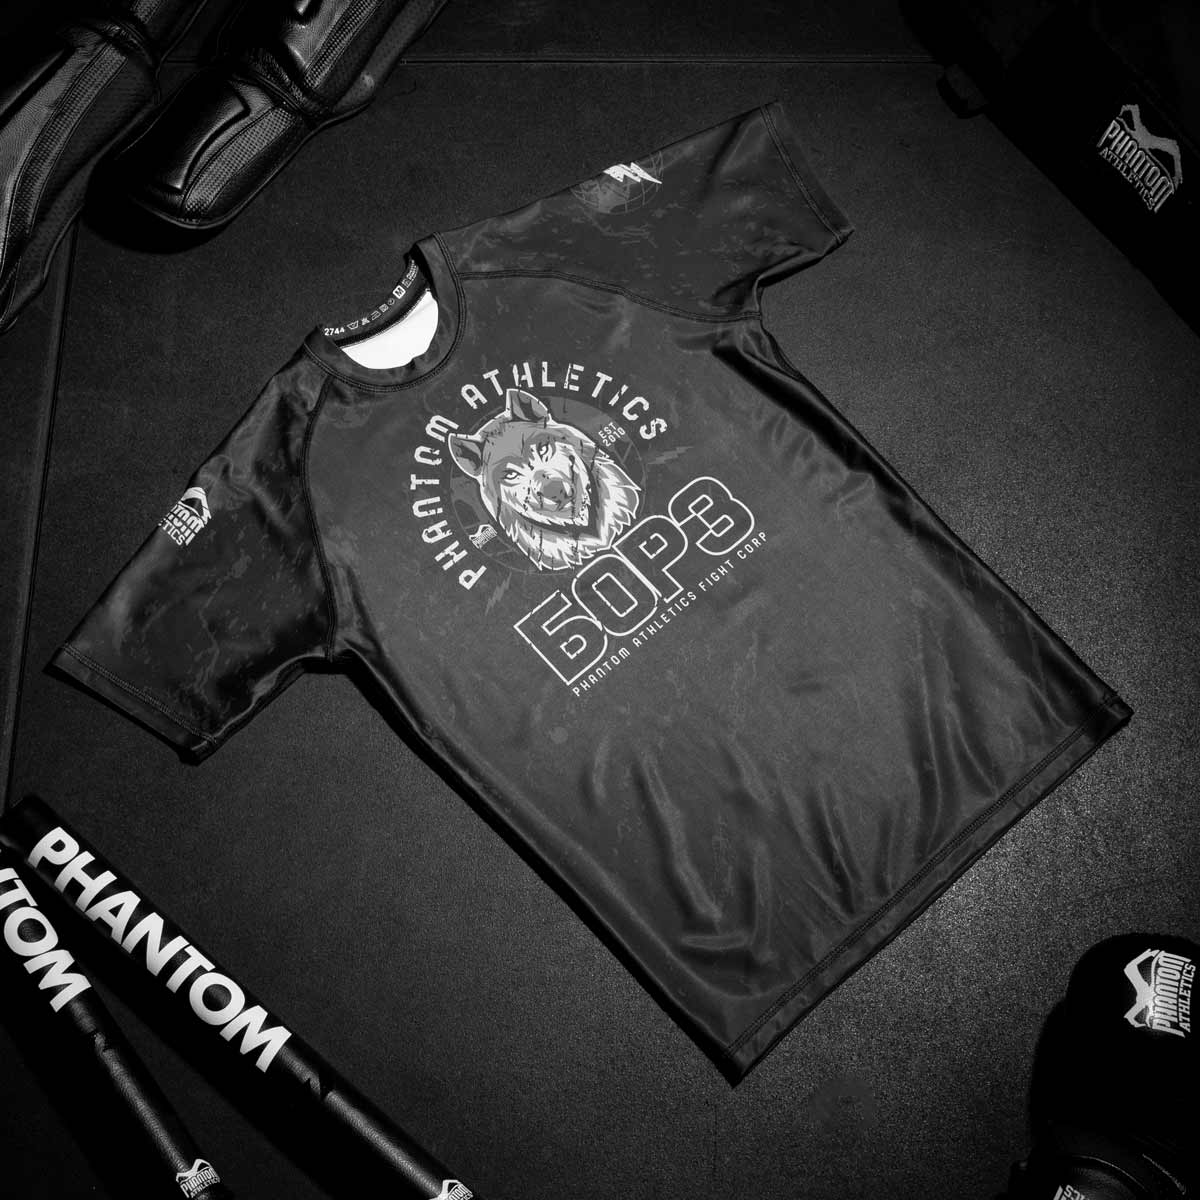 Phantom BORZ БОРЗ Rashguard. Das ideale Compression Shirt für deinen Kampfsport. Im Tschetschenien Wolf Design mit russischem WOLF Schriftzug. Perfekt für MMA, Muay Thai, Kickboxen, Ringen und Grappling.